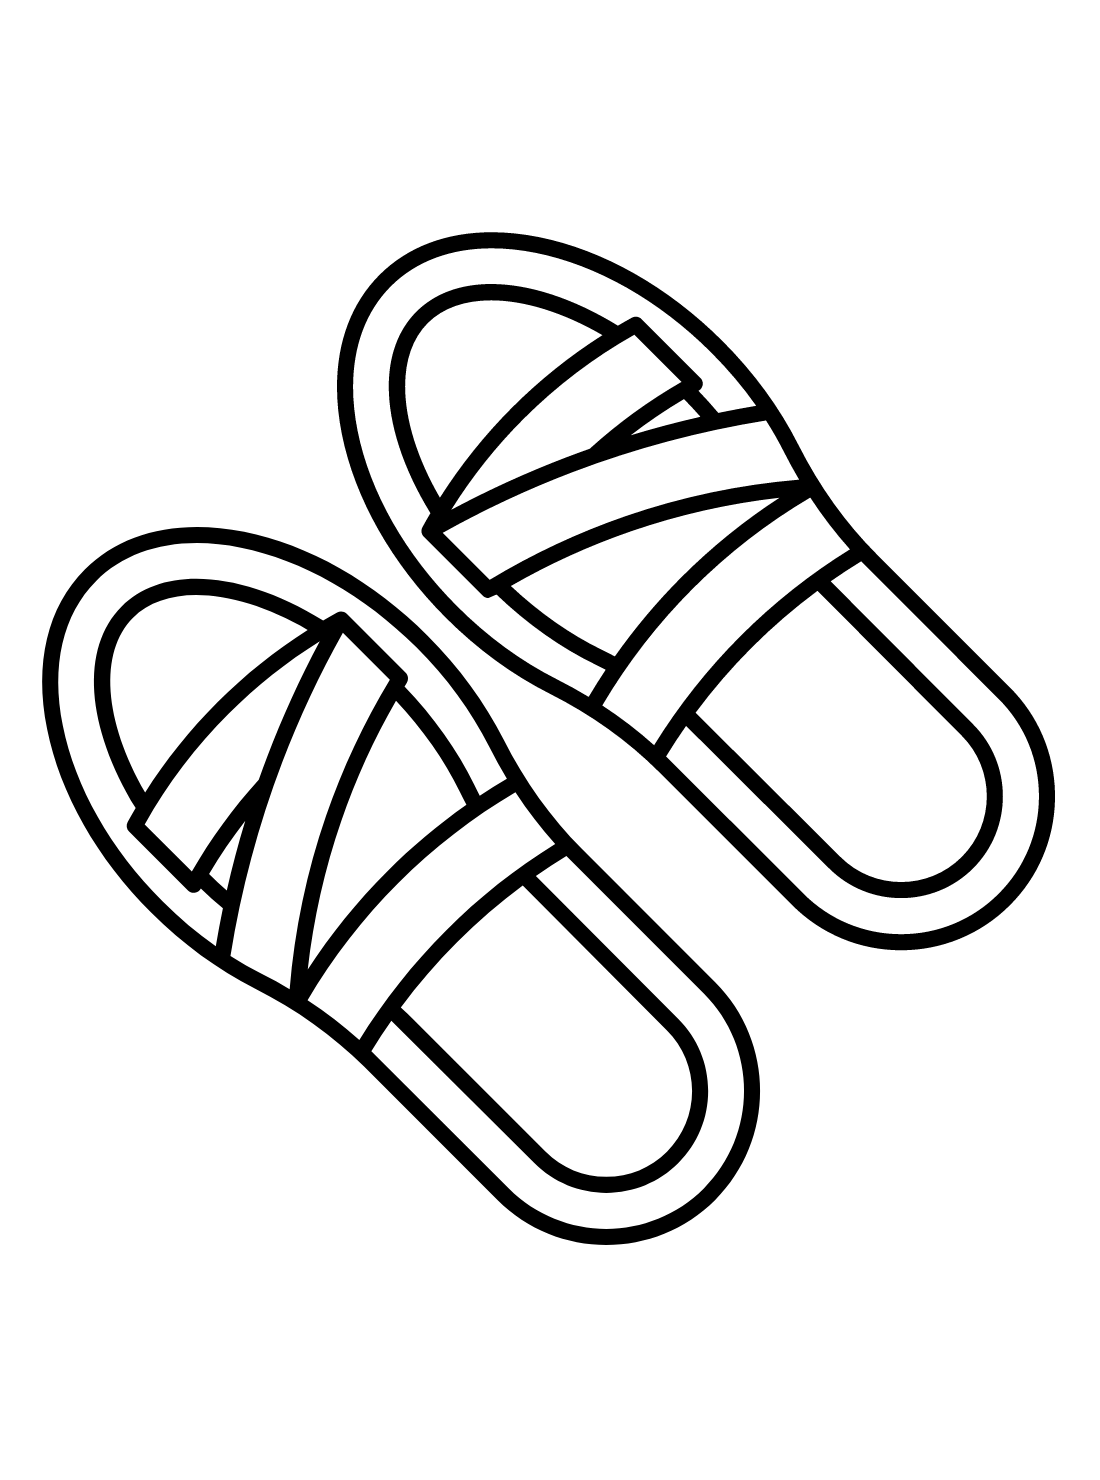 ASidas sandals